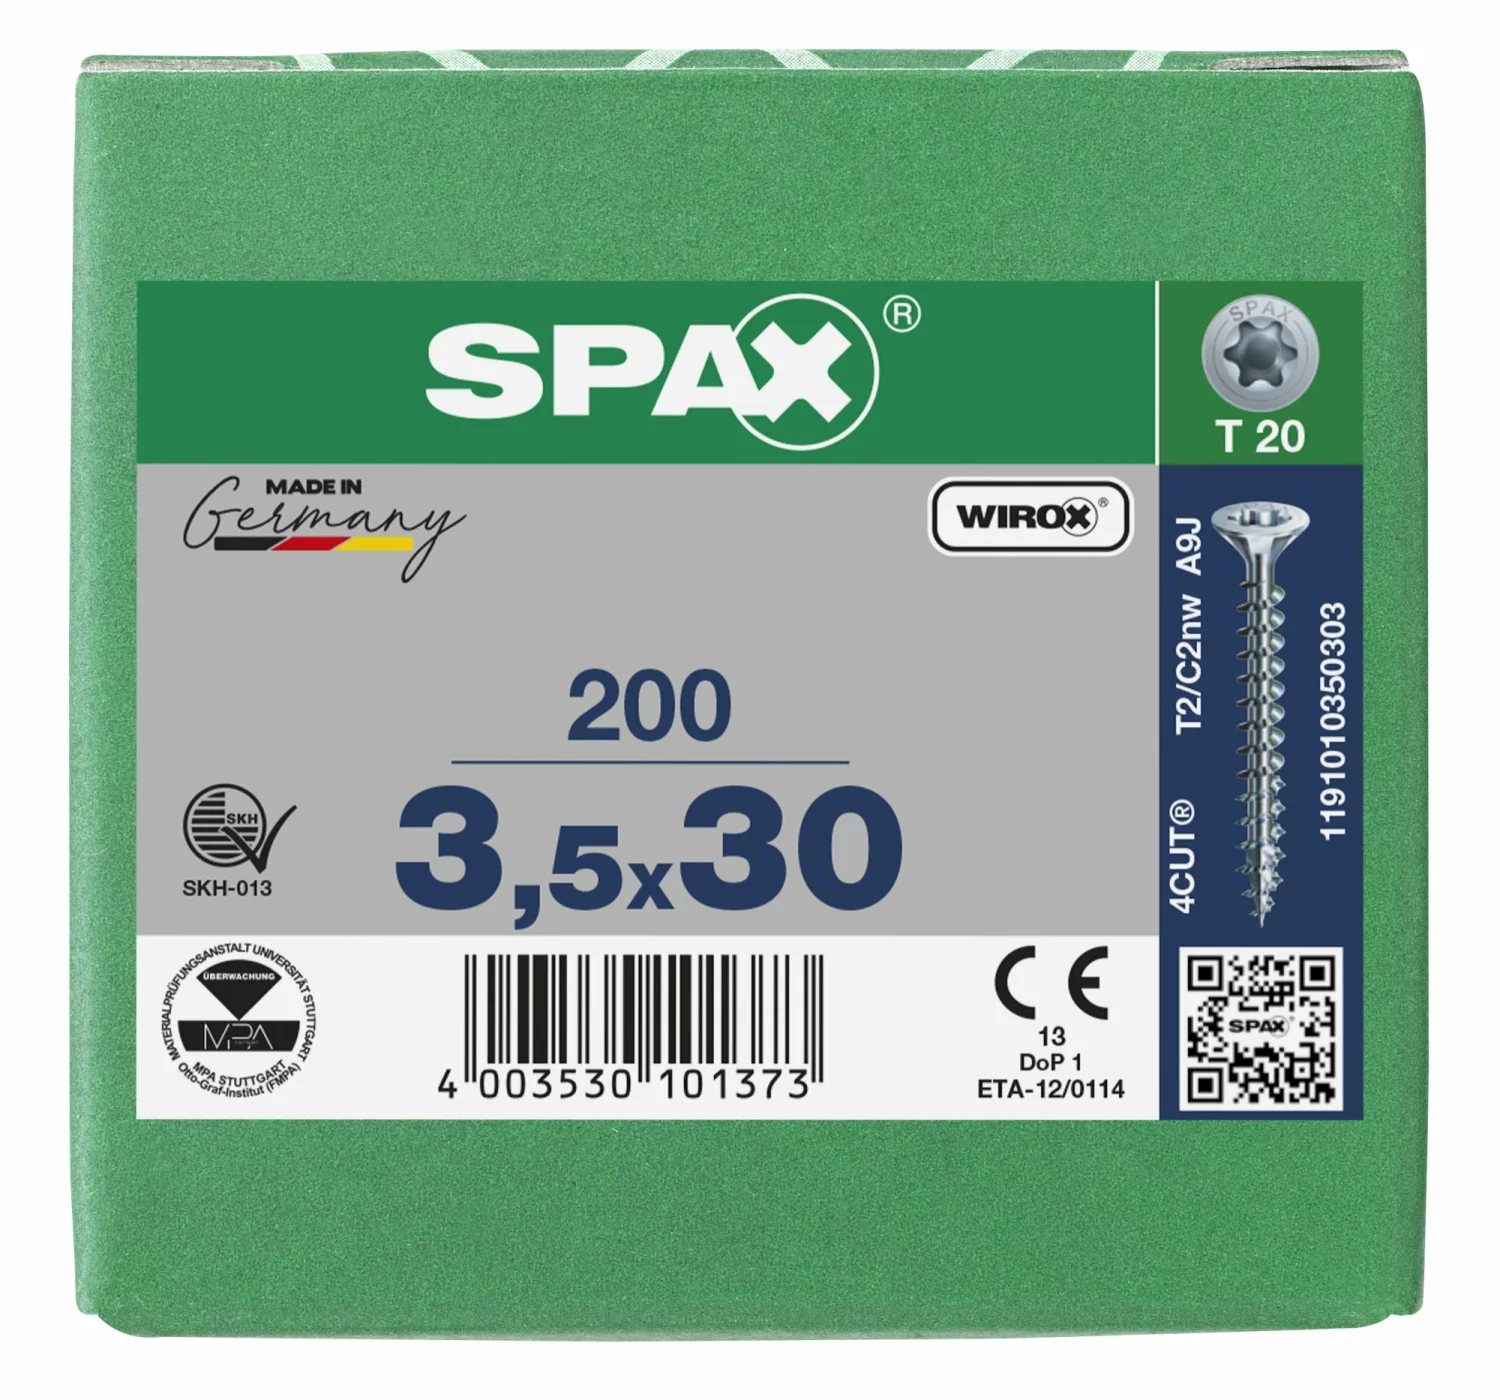 SPAX 1191010350303 Universele schroef, Verzonken kop, 3.5 x 30, Voldraad, T-STAR plus T20 - WIROX - 200 stuks-image